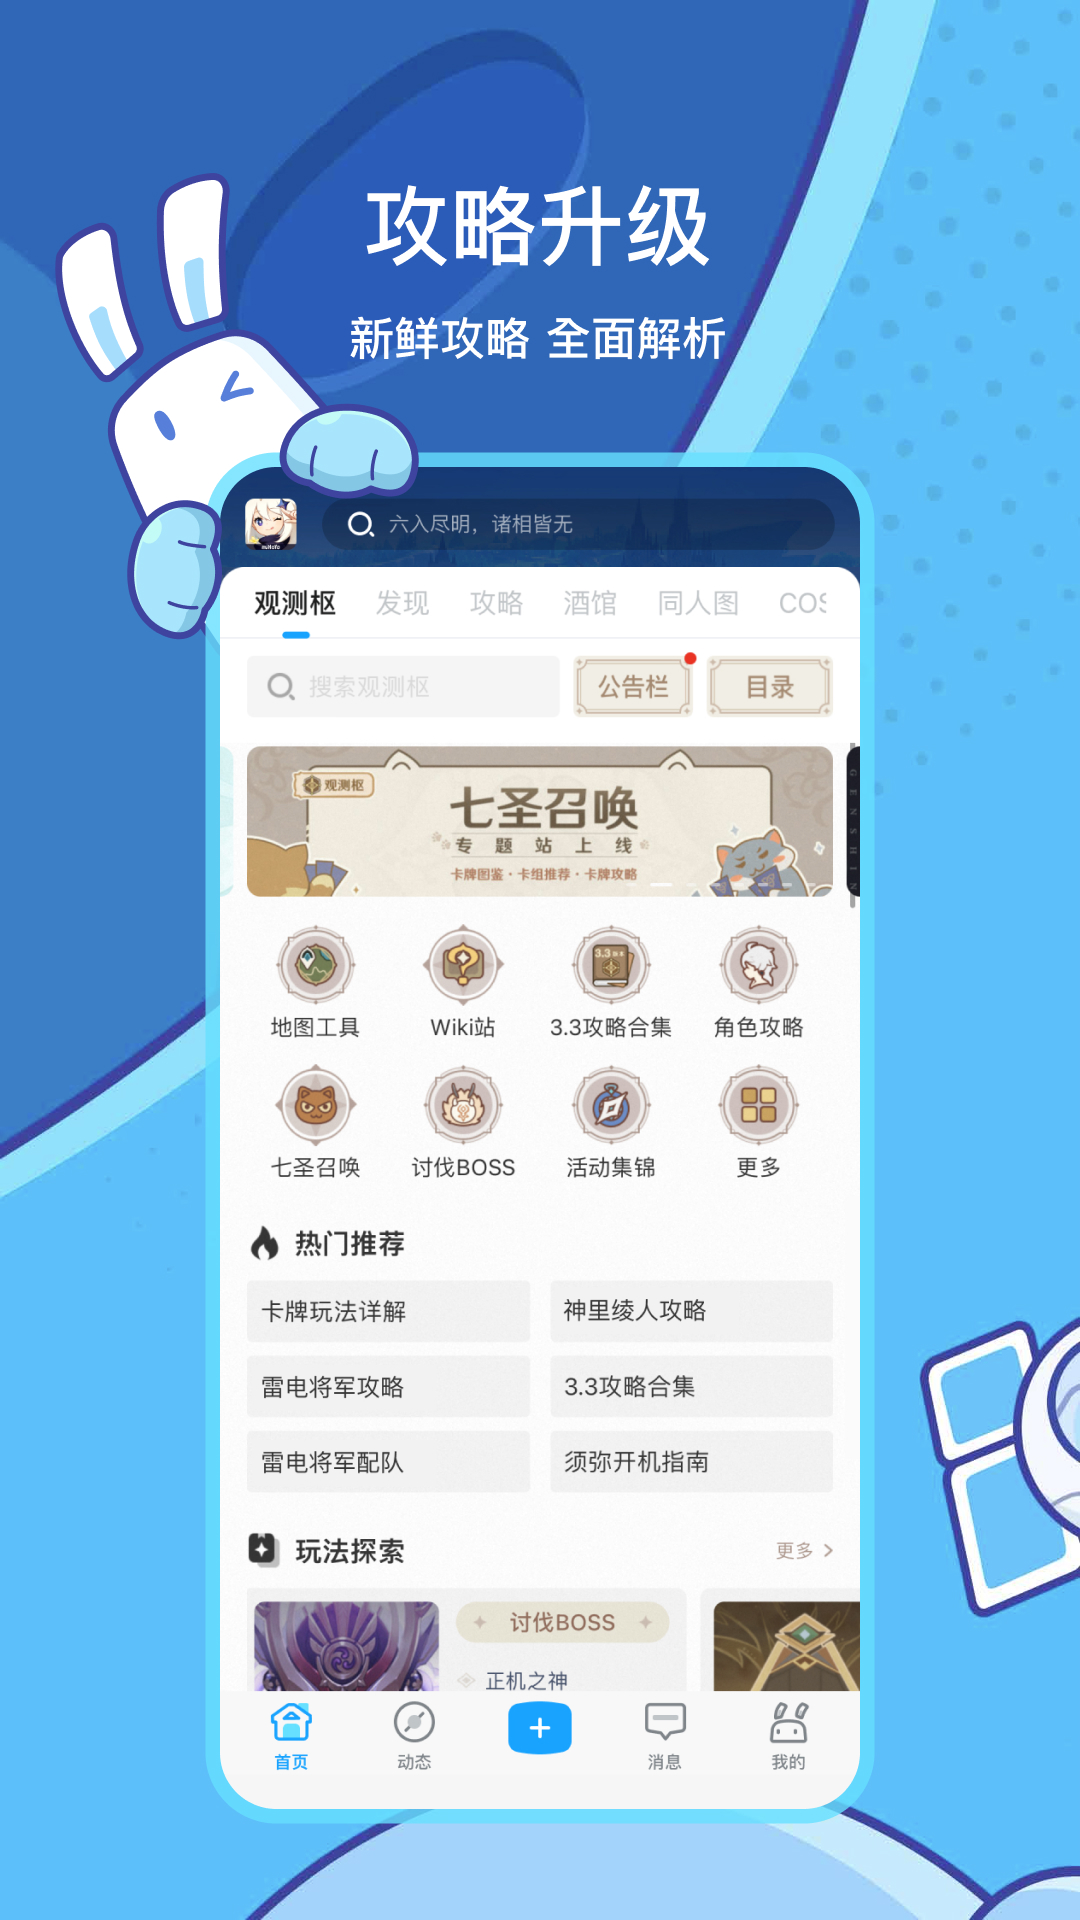 米哈游app官方下载米游社图1: